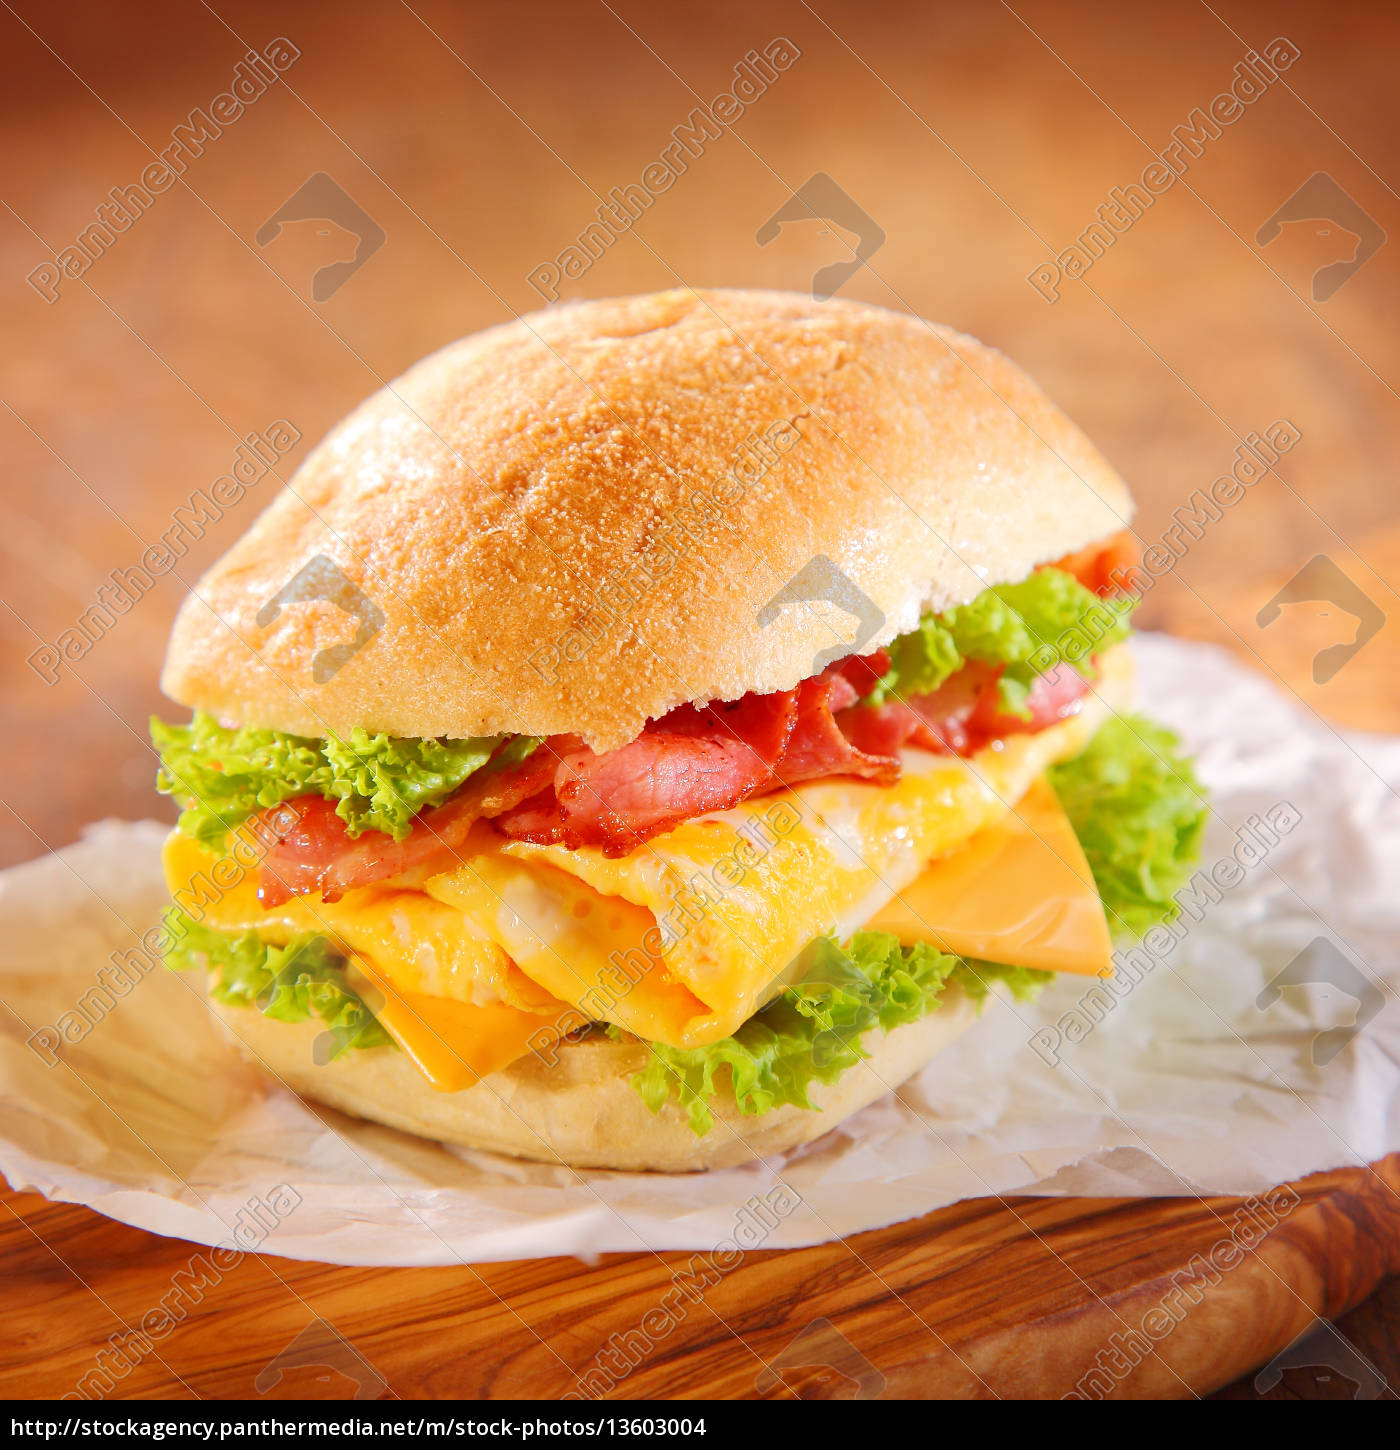 Leckerer Hamburger mit Schinken Käse und Salat - Lizenzfreies Foto ...